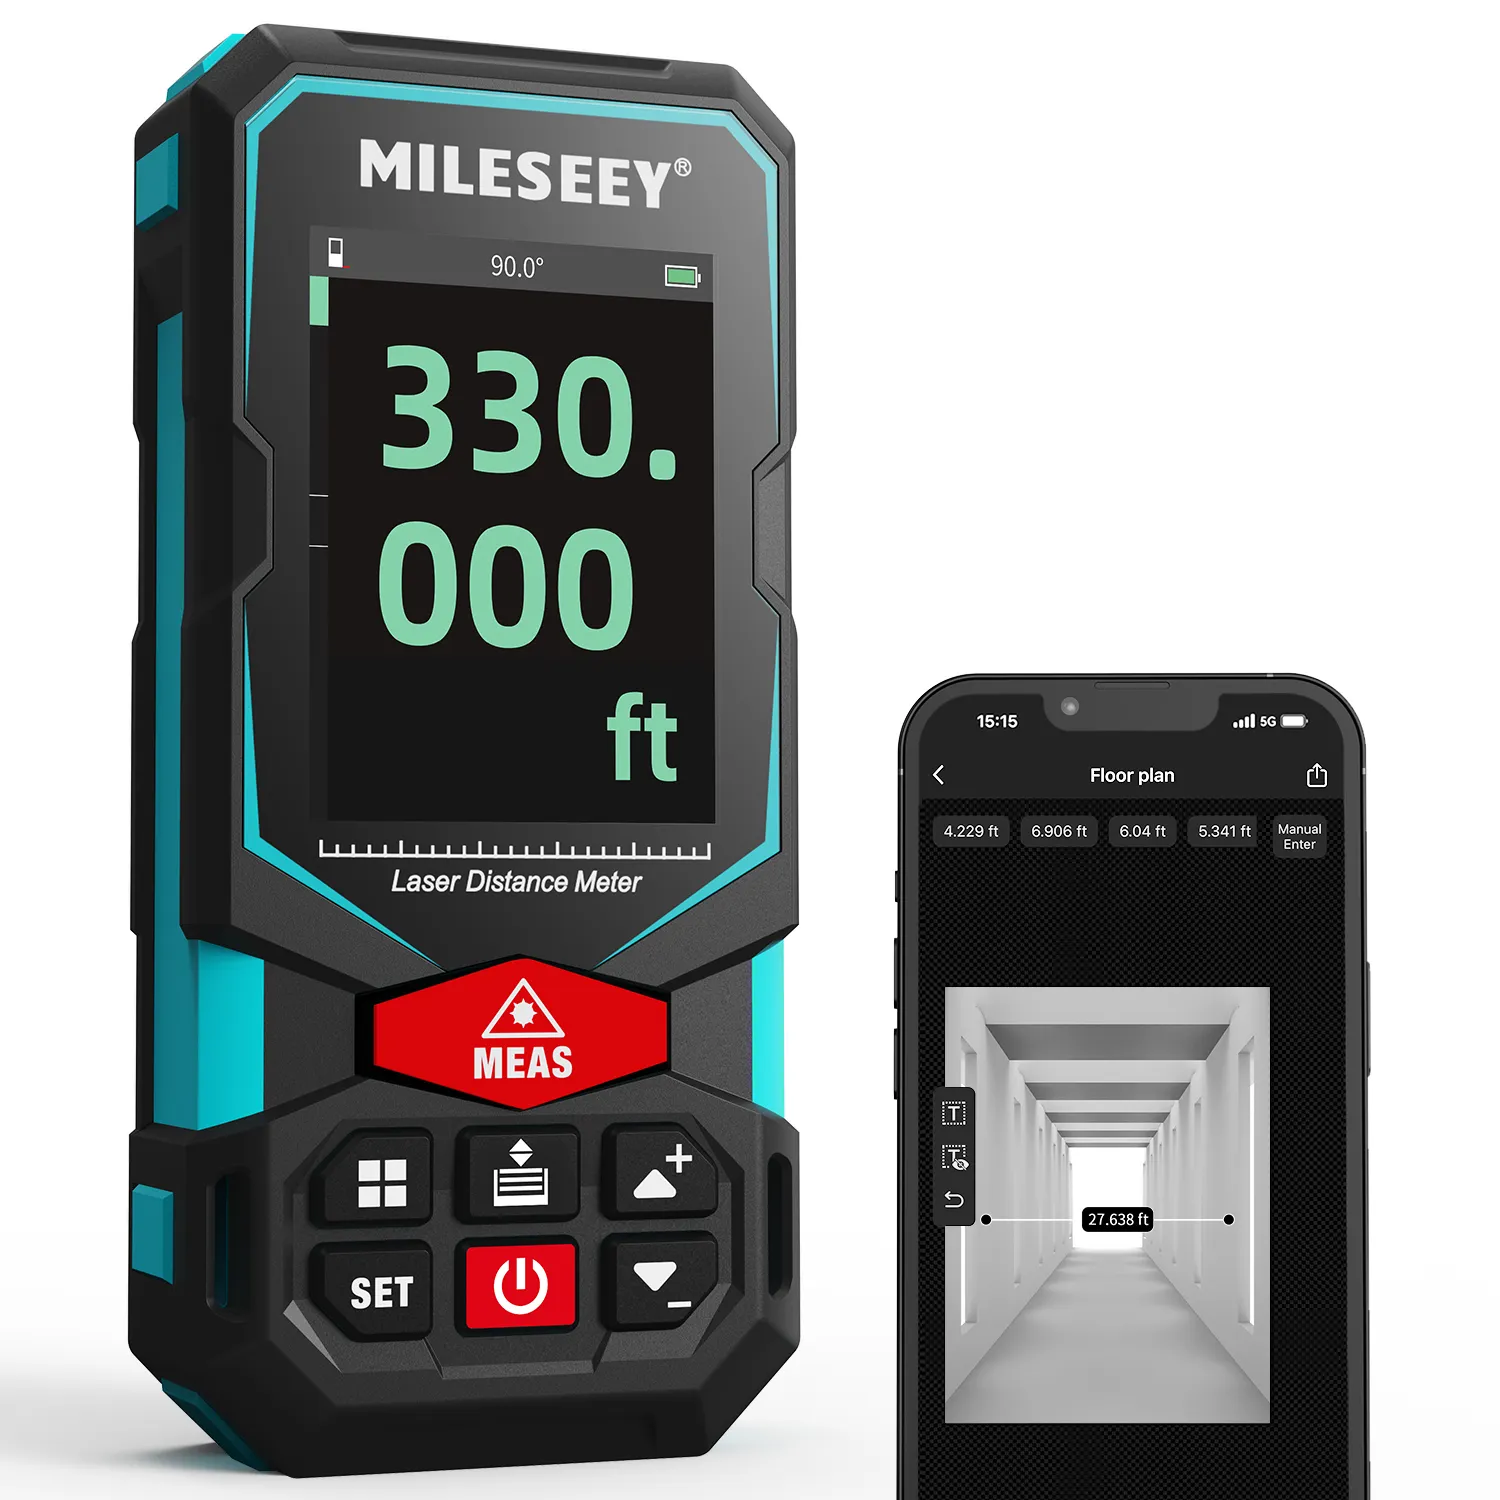 MiLESEEY S7 misuratore di distanza Laser professionale per esterni misurazione a lungo raggio senza fotocamera Pointfinder